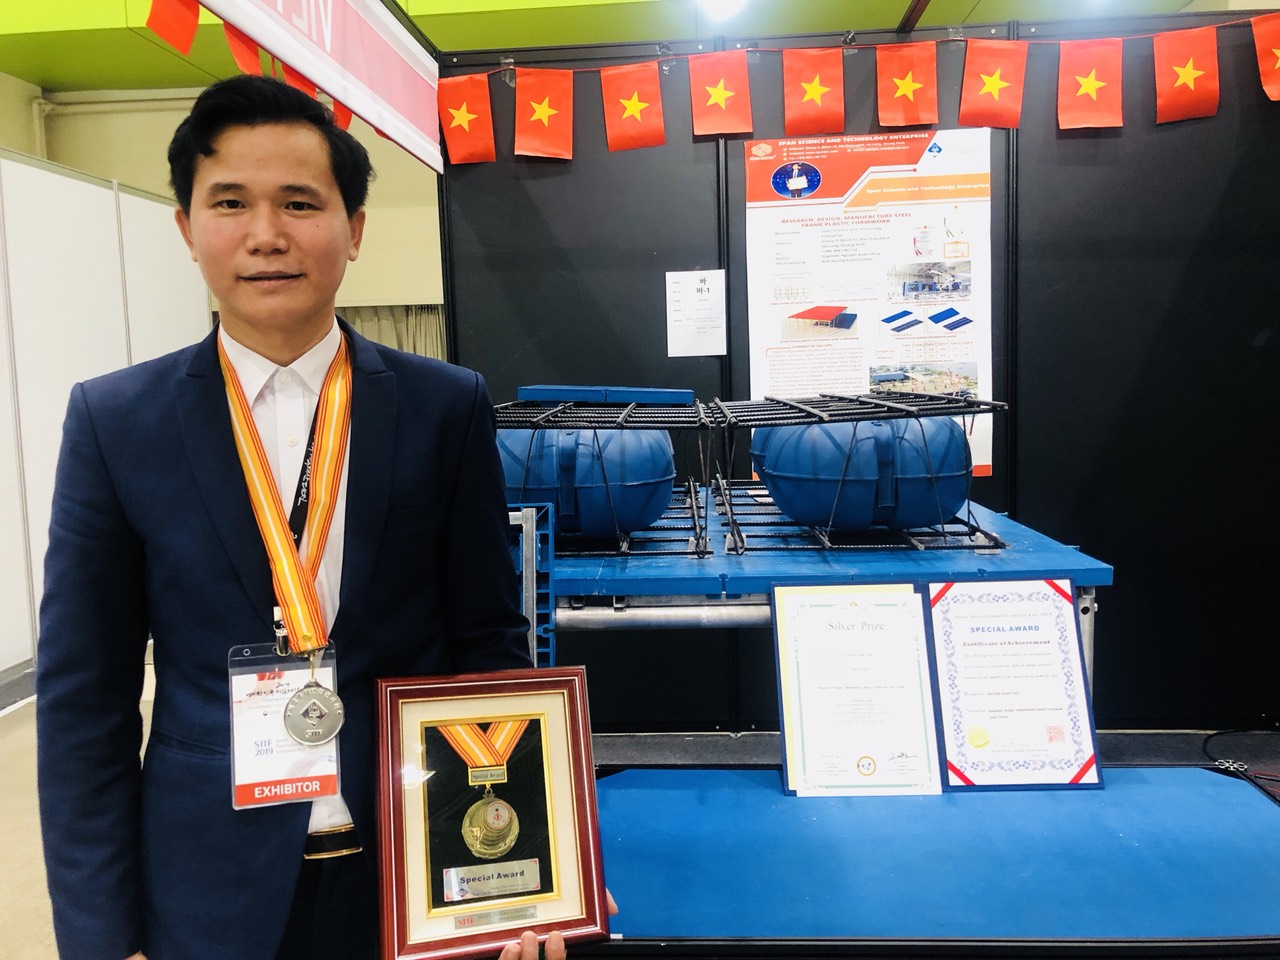 Ông Nguyễn Xuân Thủy, tác giả công trình “Nghiên cứu, thiết kế, chế tạo, sản xuất tấm cốp pha nhựa khung thép” đạt Huy chương bạc tại Triển lãm Quốc tế về sáng tạo Khoa học công nghệ (SIIF 2019).